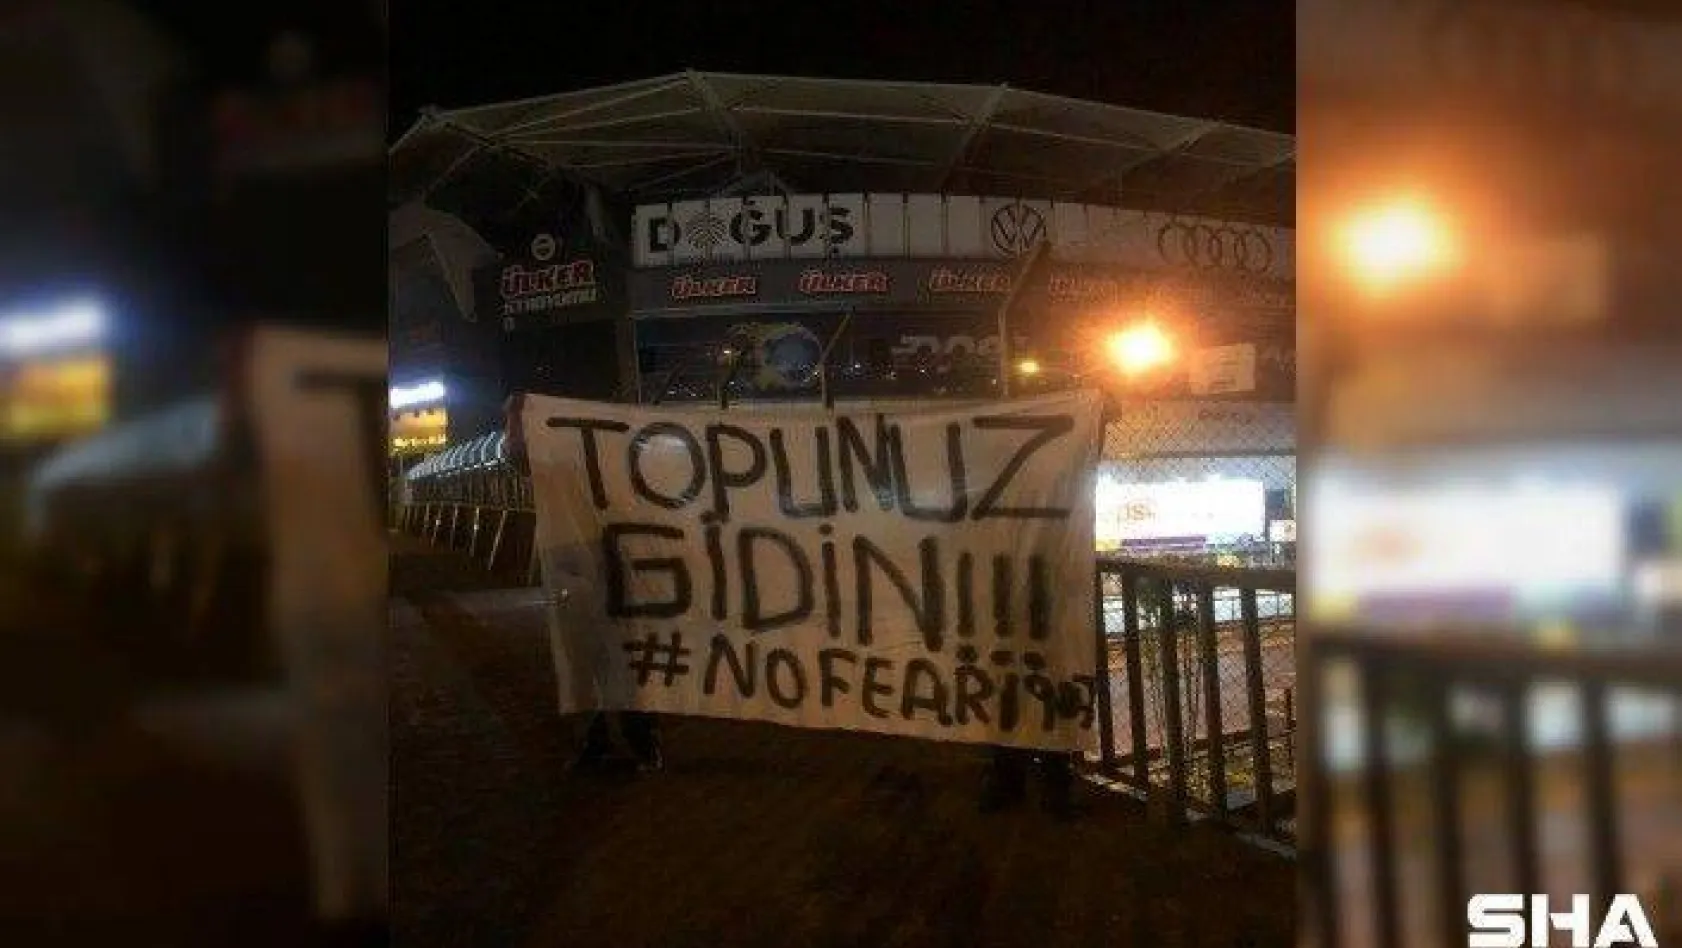 Fenerbahçe Stadı'na tepki parkartı: &quotTopunuz gidin"